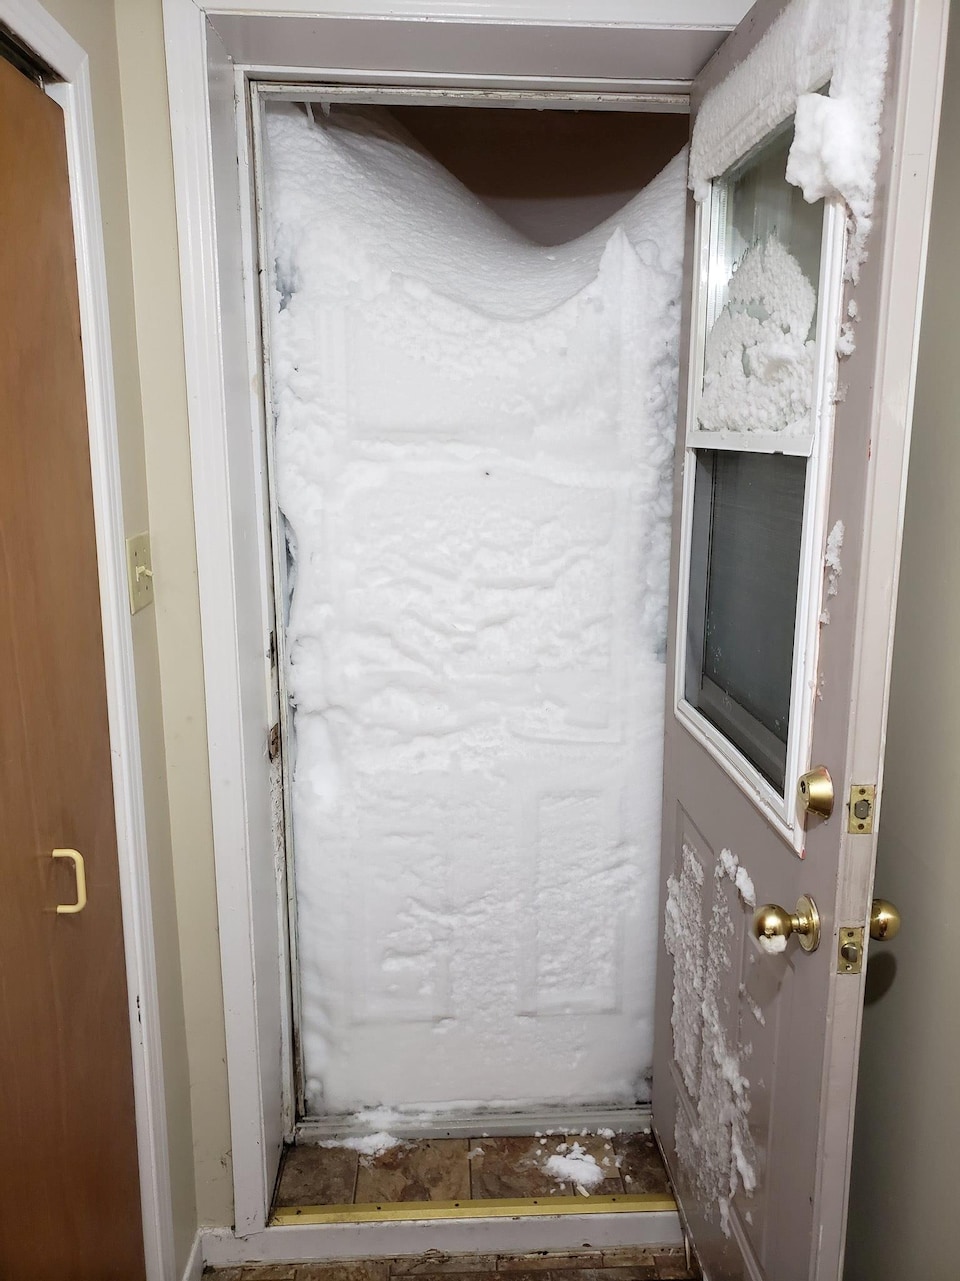 Une porte ouverte laisse voir un mur de neige qui bloque complètement l'accès et empêche de sortir d'une maison.